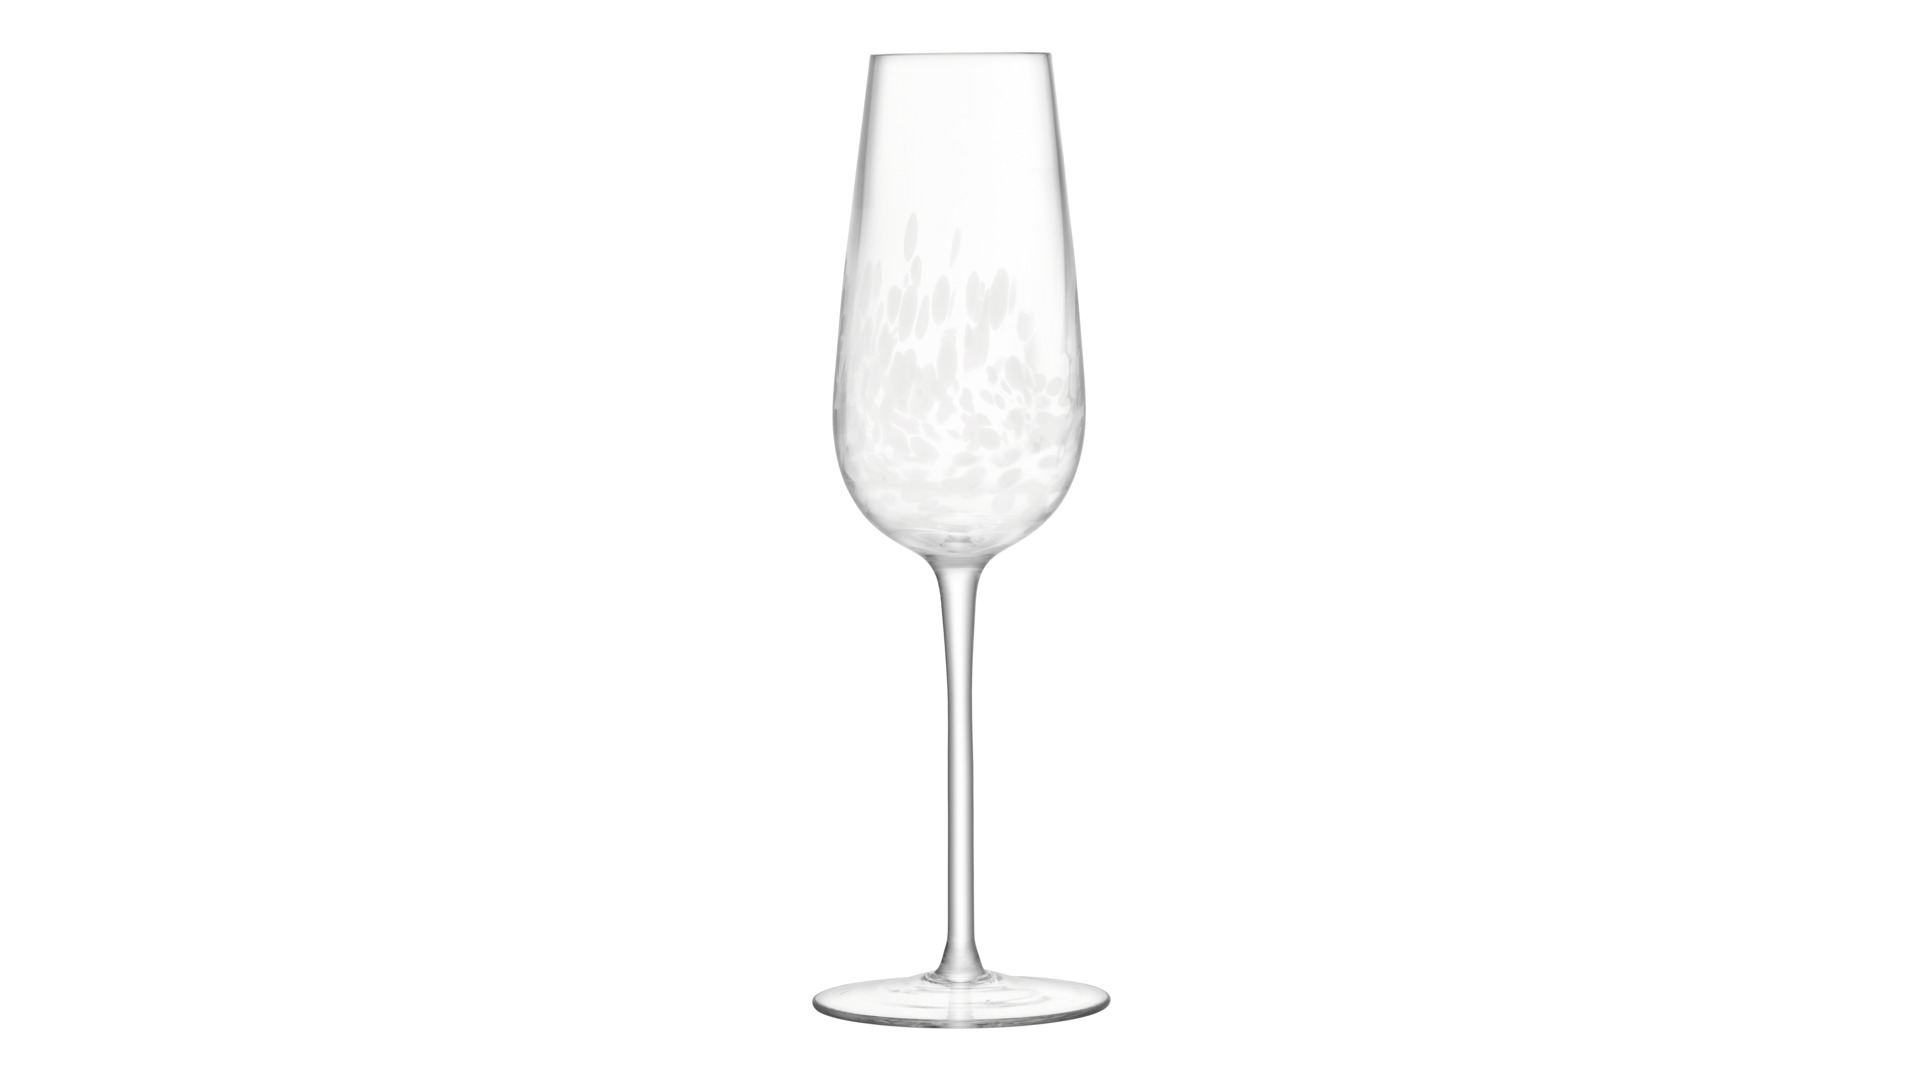 Набор бокалов для шампанского LSA International Stipple 250 мл, 2 шт, стекло